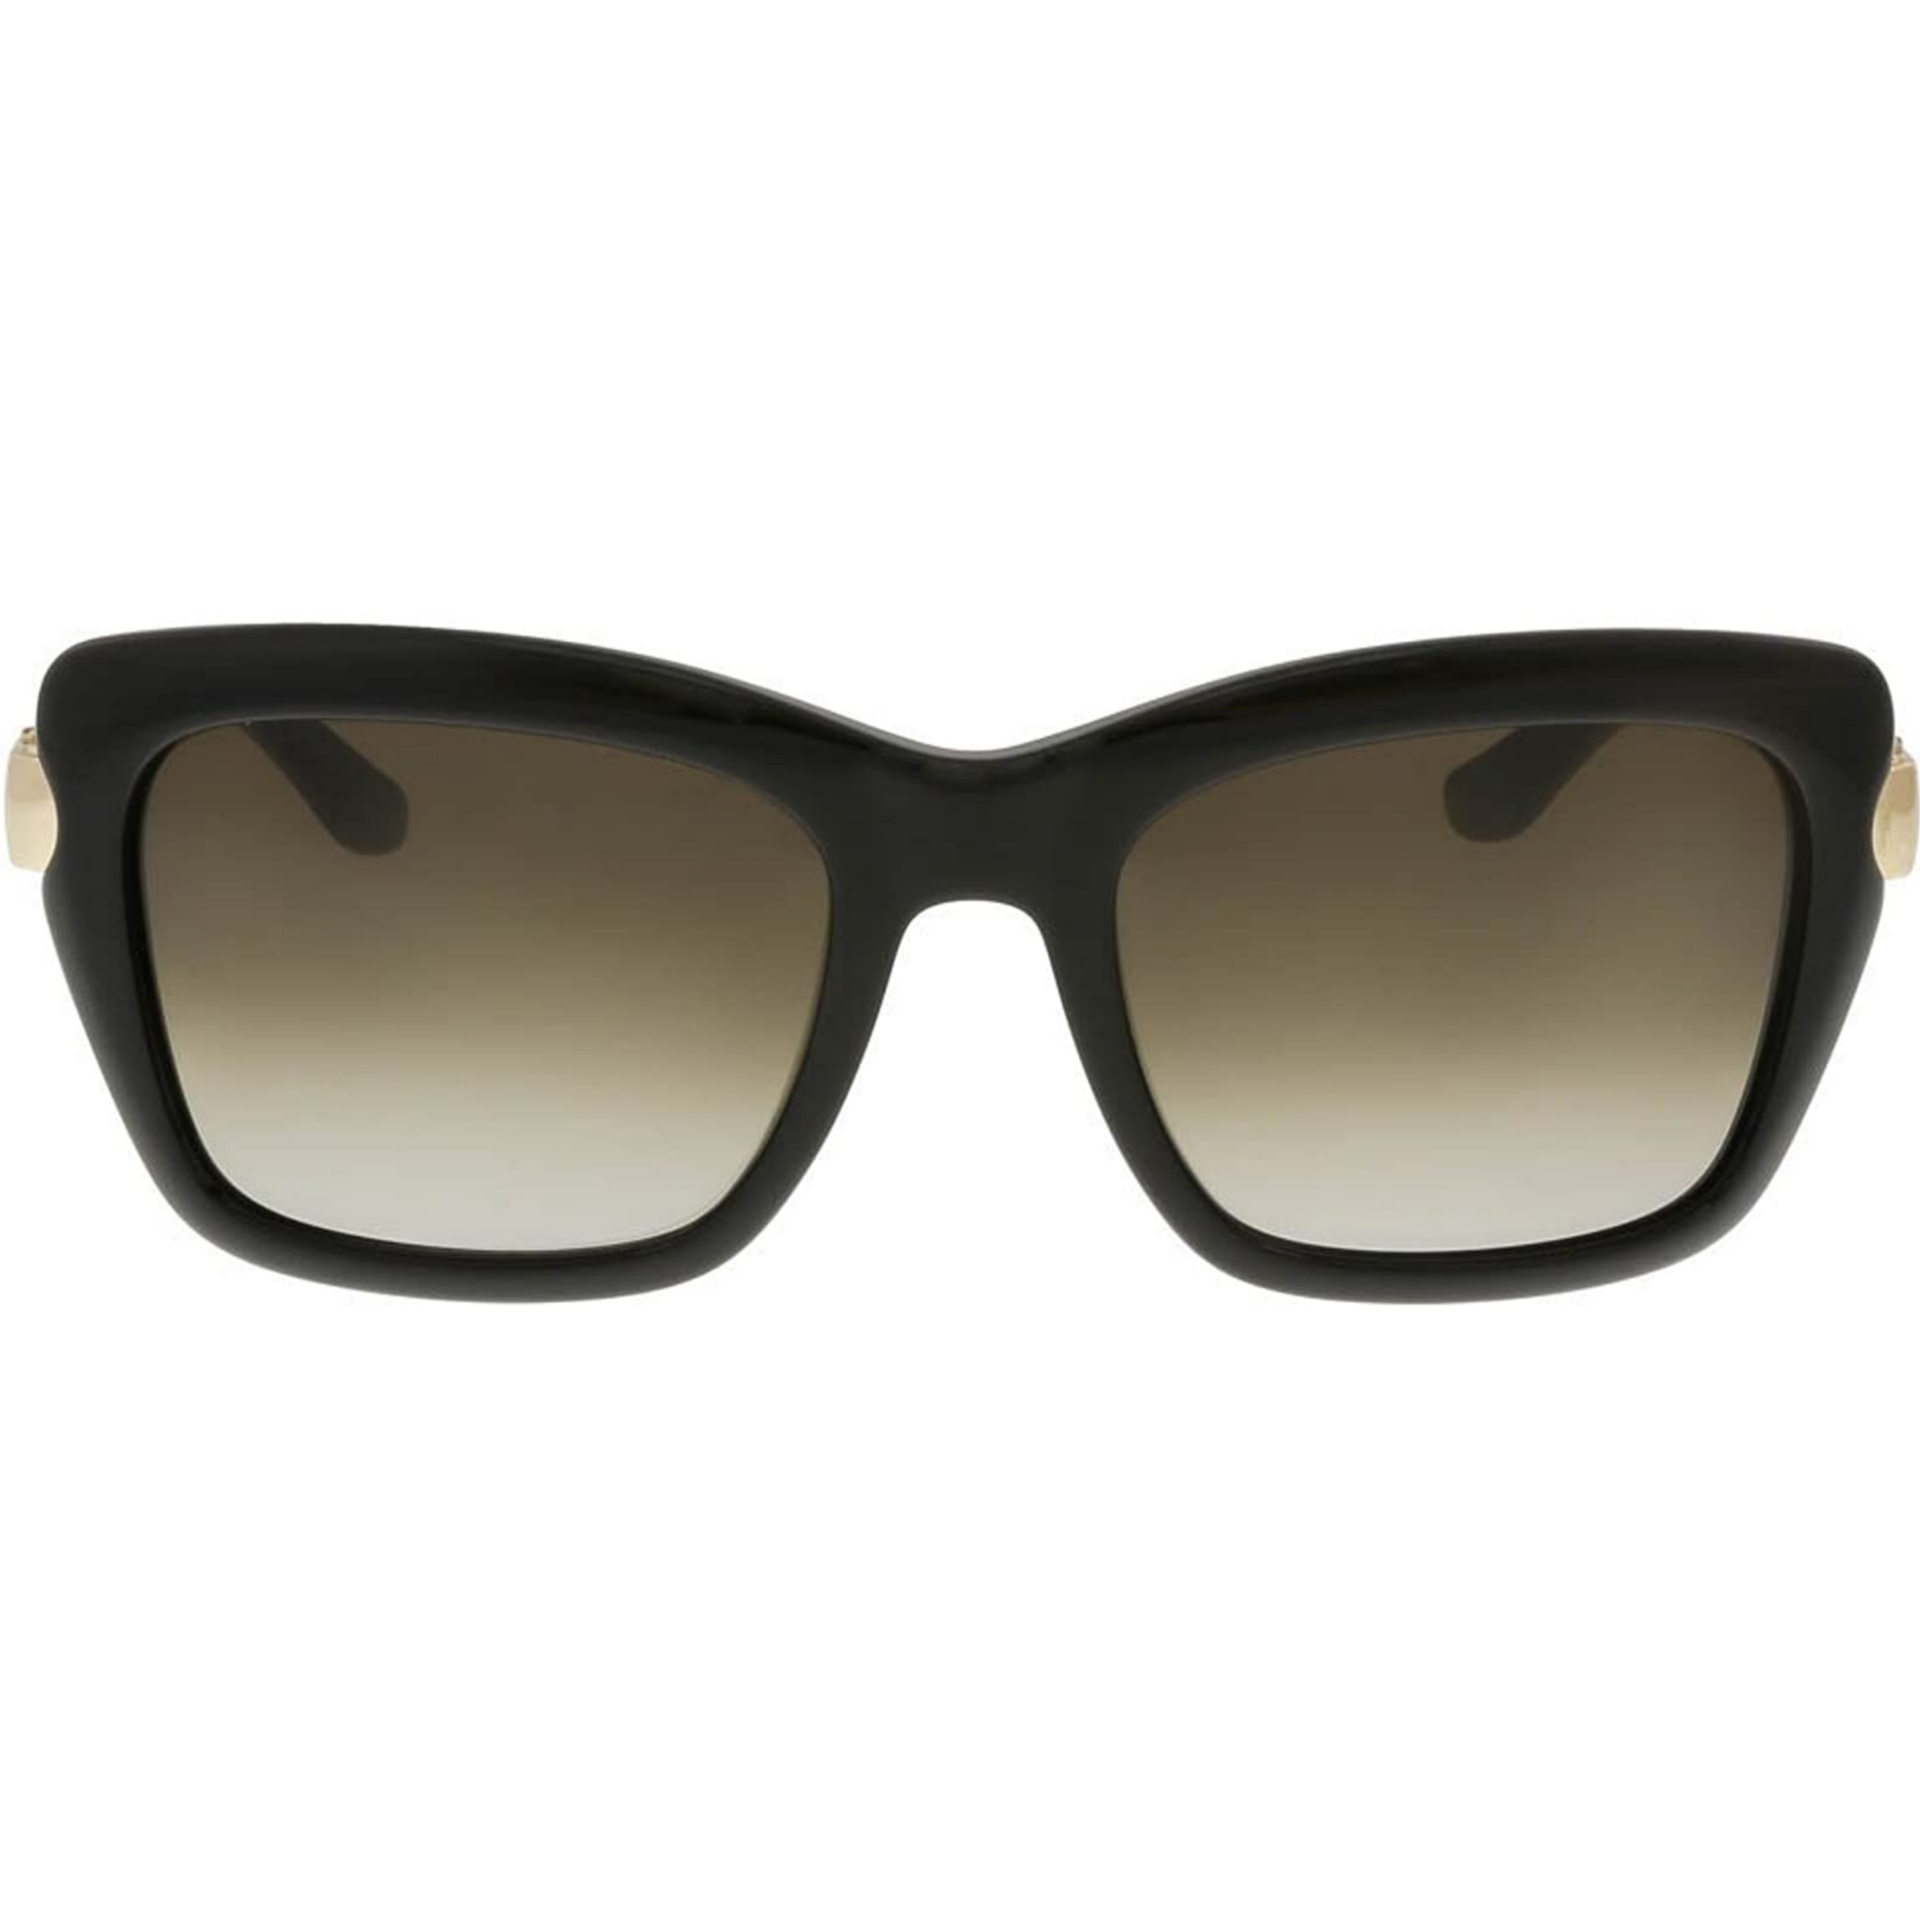 عینک آفتابی زنانه سالواتوره فراگامو مدل SF763S 001 -  - 1